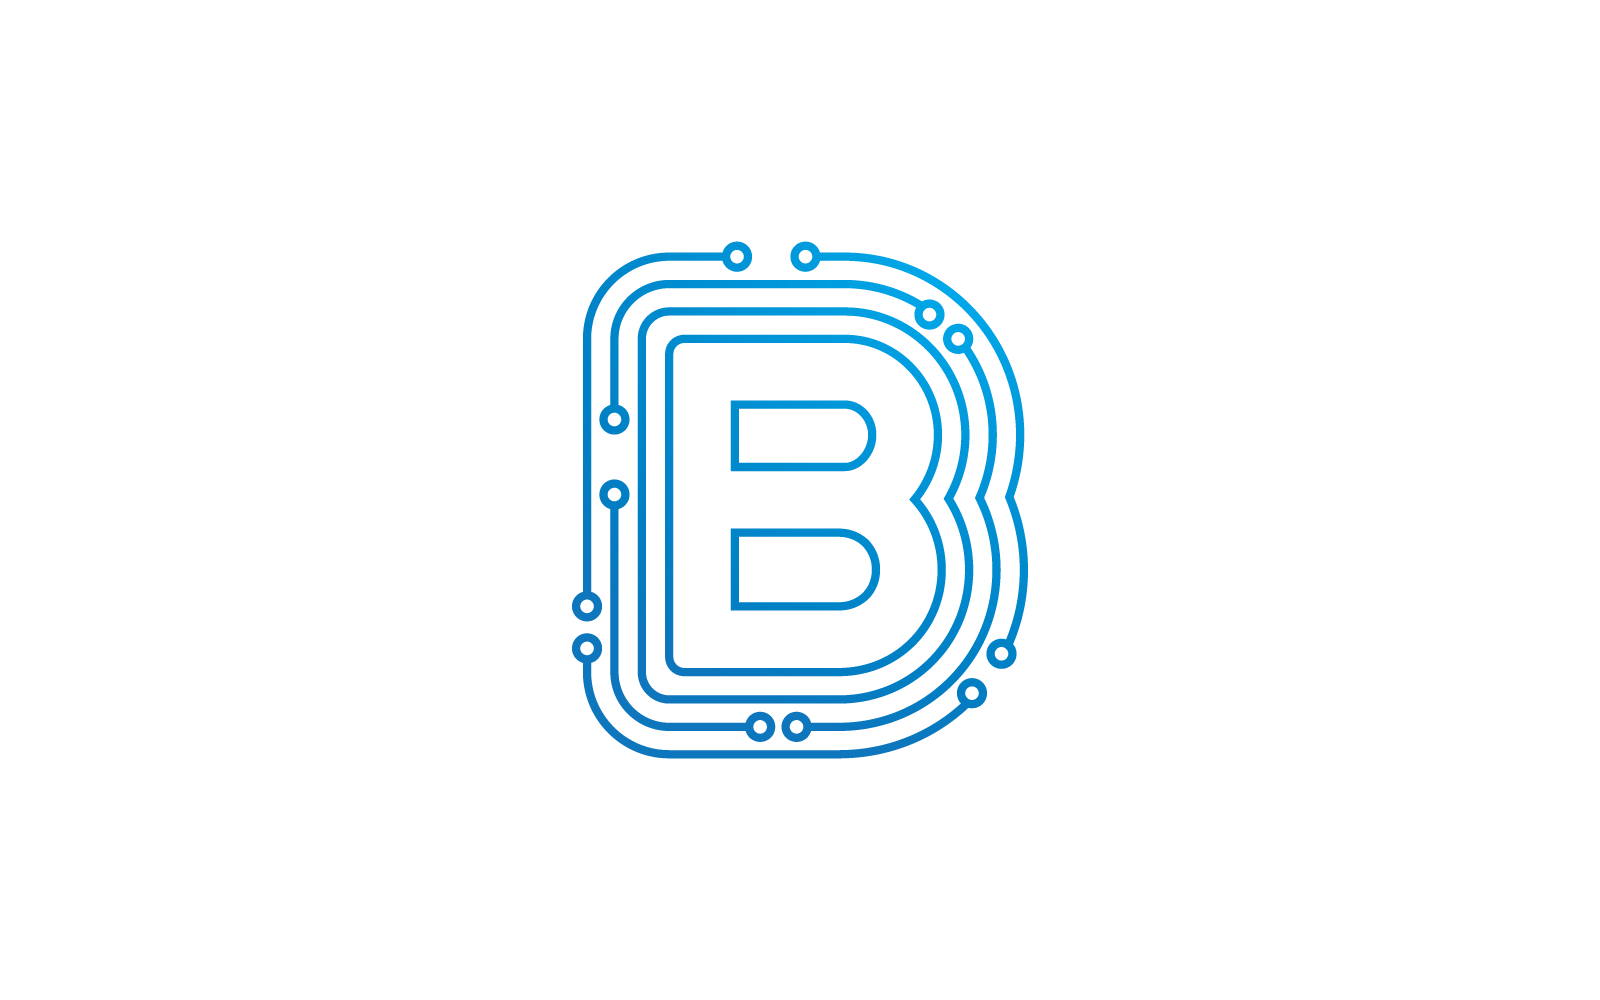 B eerste letter Circuit technologie illustratie logo vector sjabloon